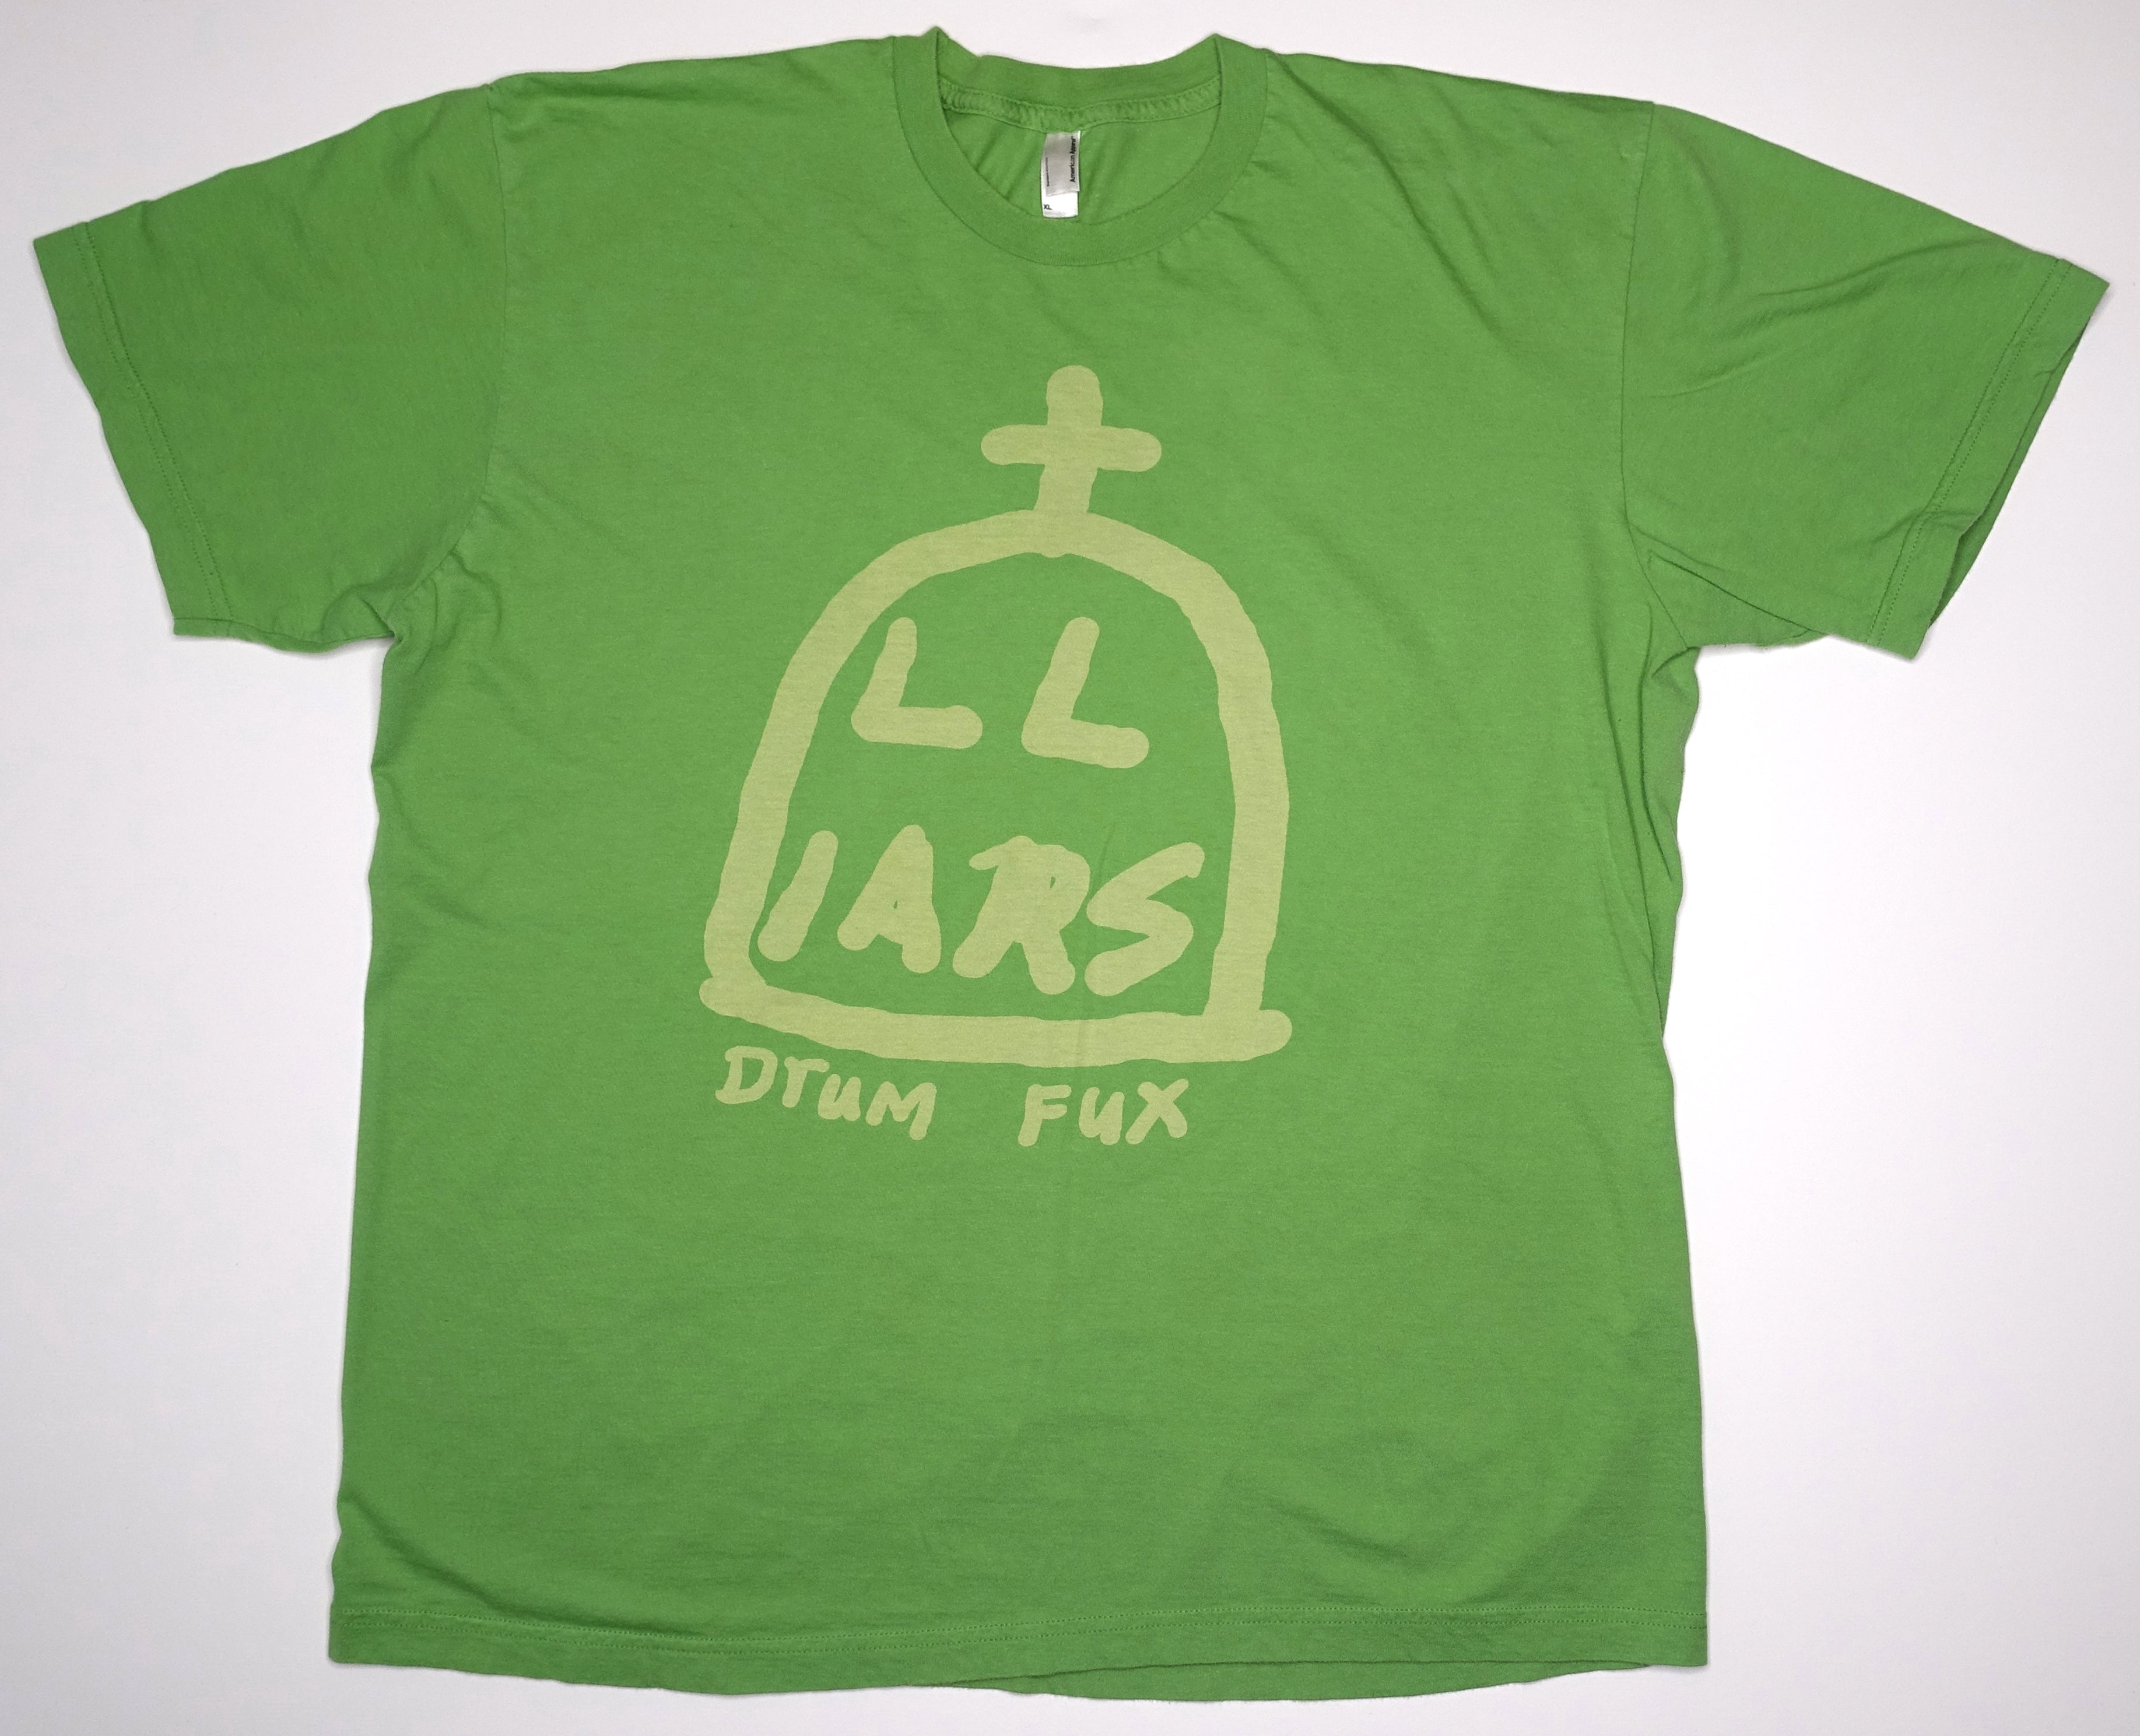 Liars - Drums Not Dead 2005 Tour Shirt Size XL